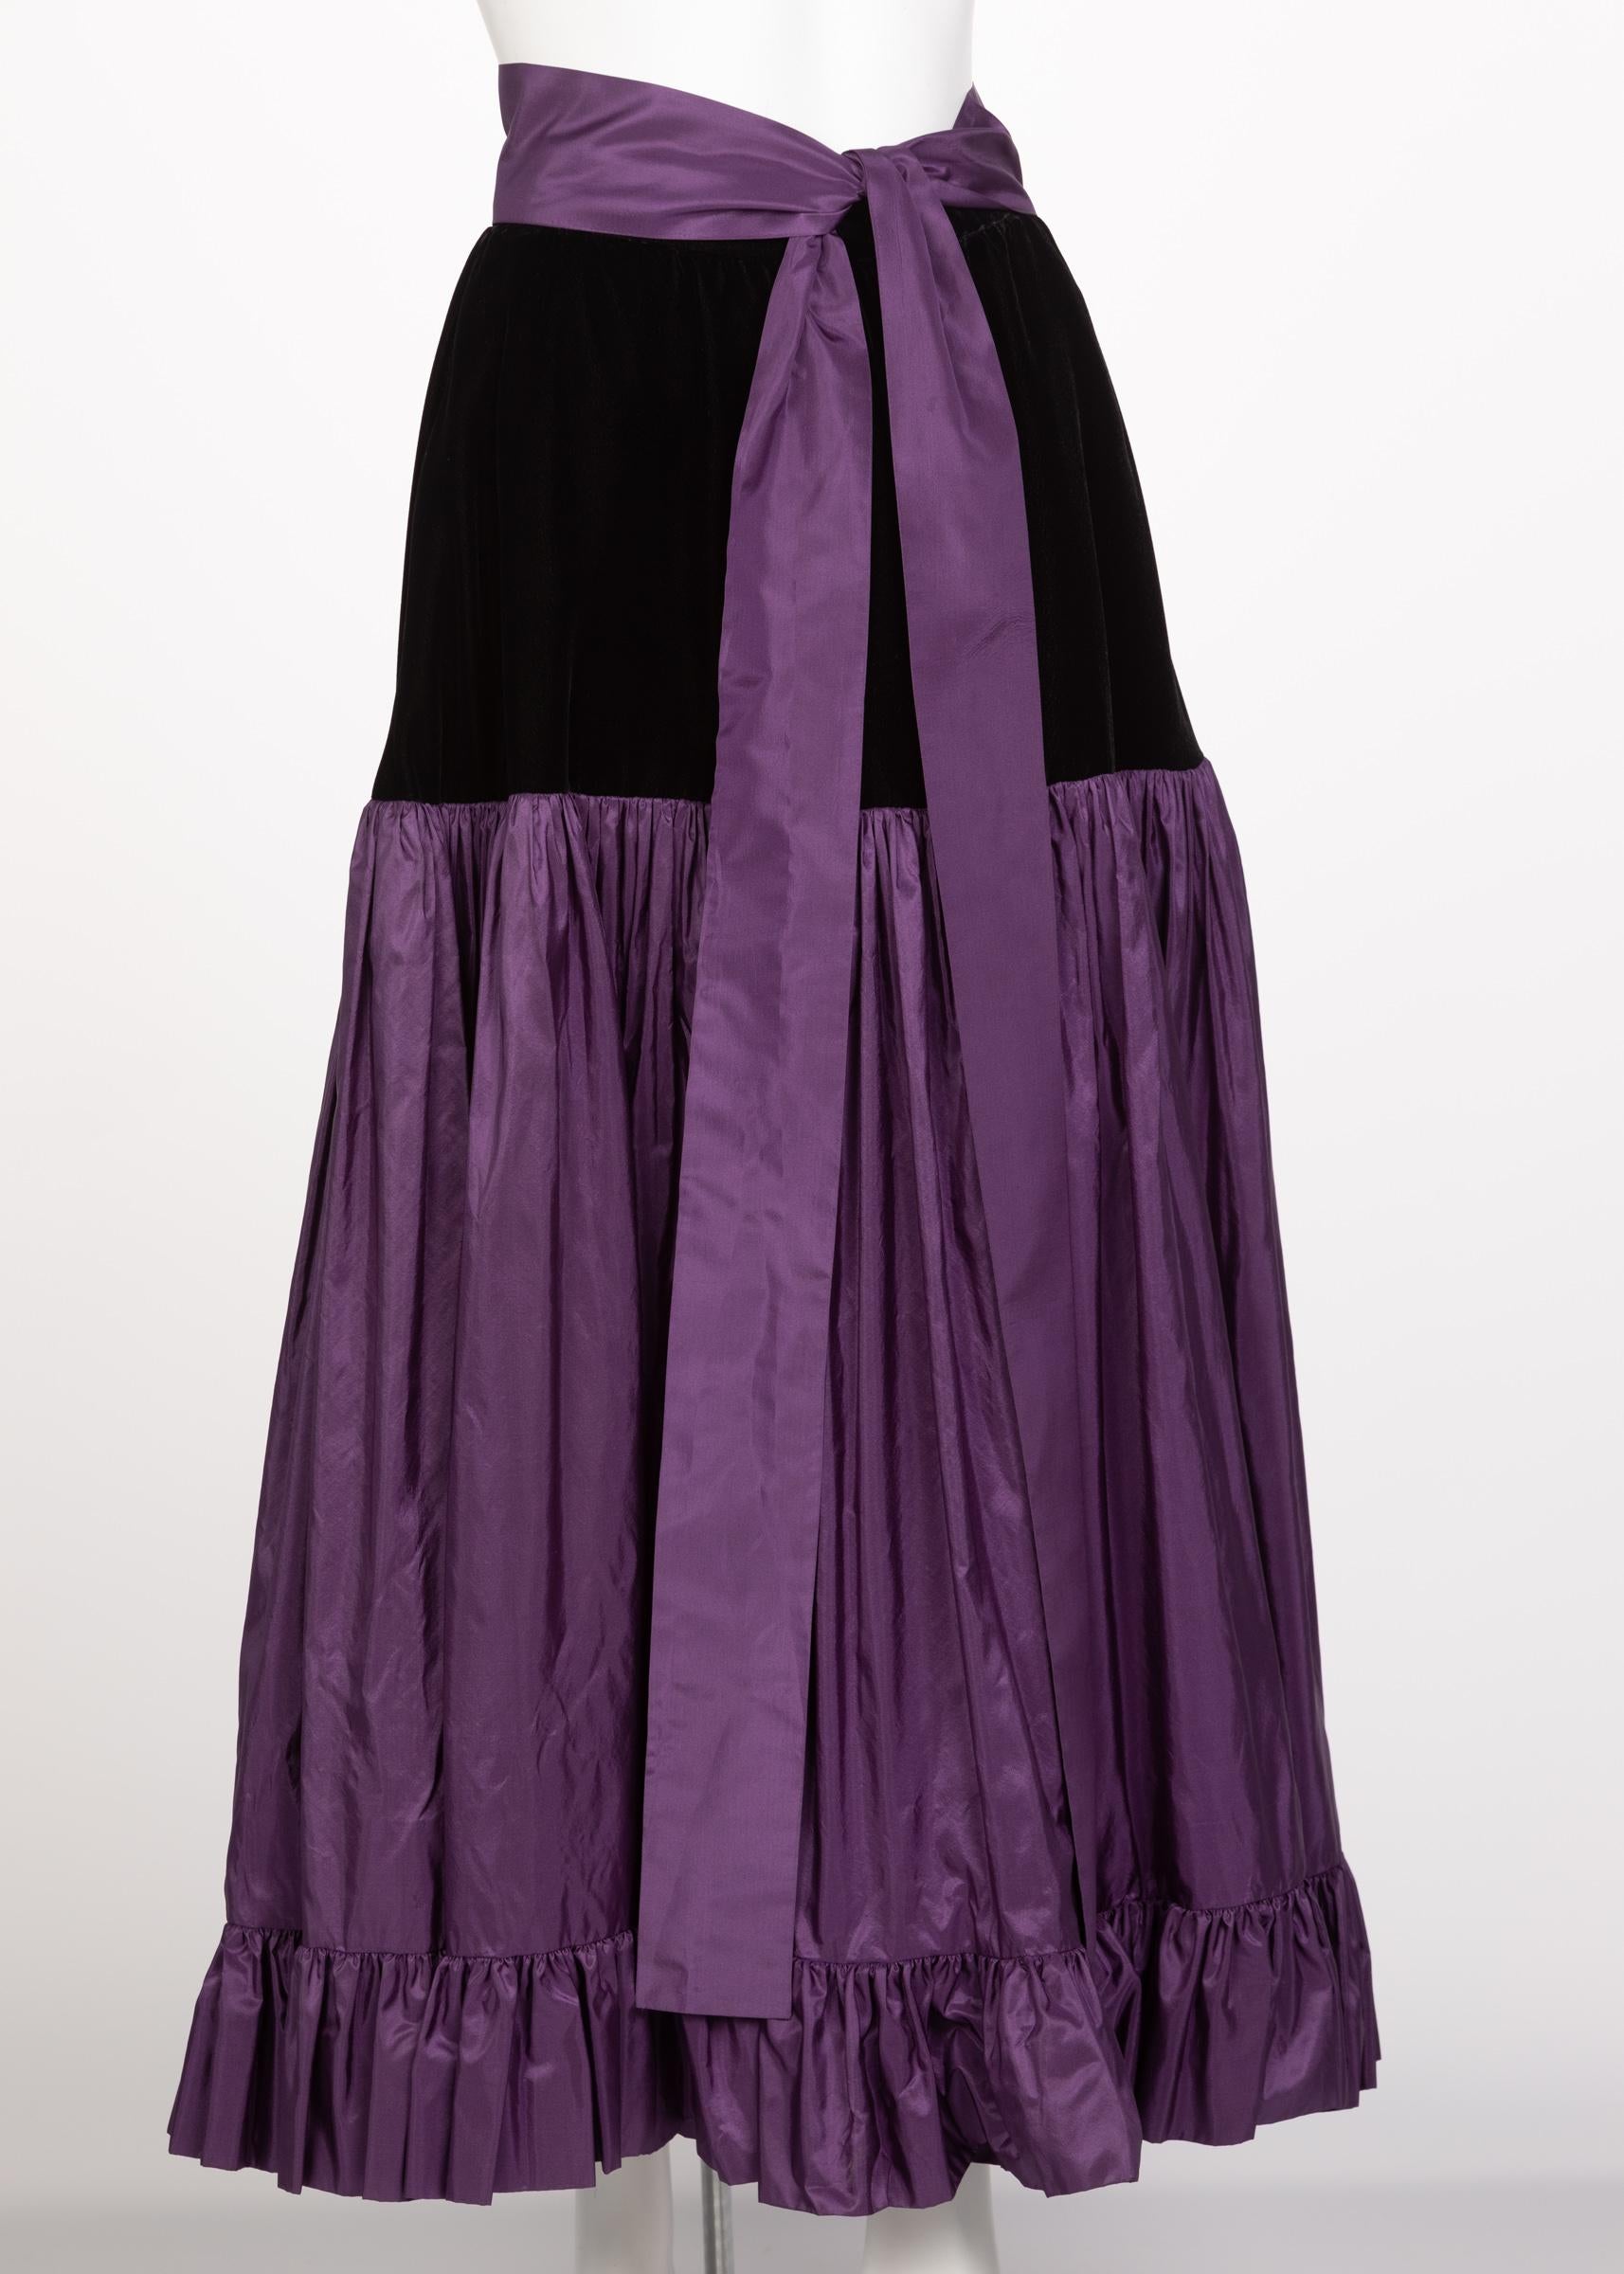 Black Yves Saint Laurent Skirt Russian Collection Purple Skirt YSL, 1970s